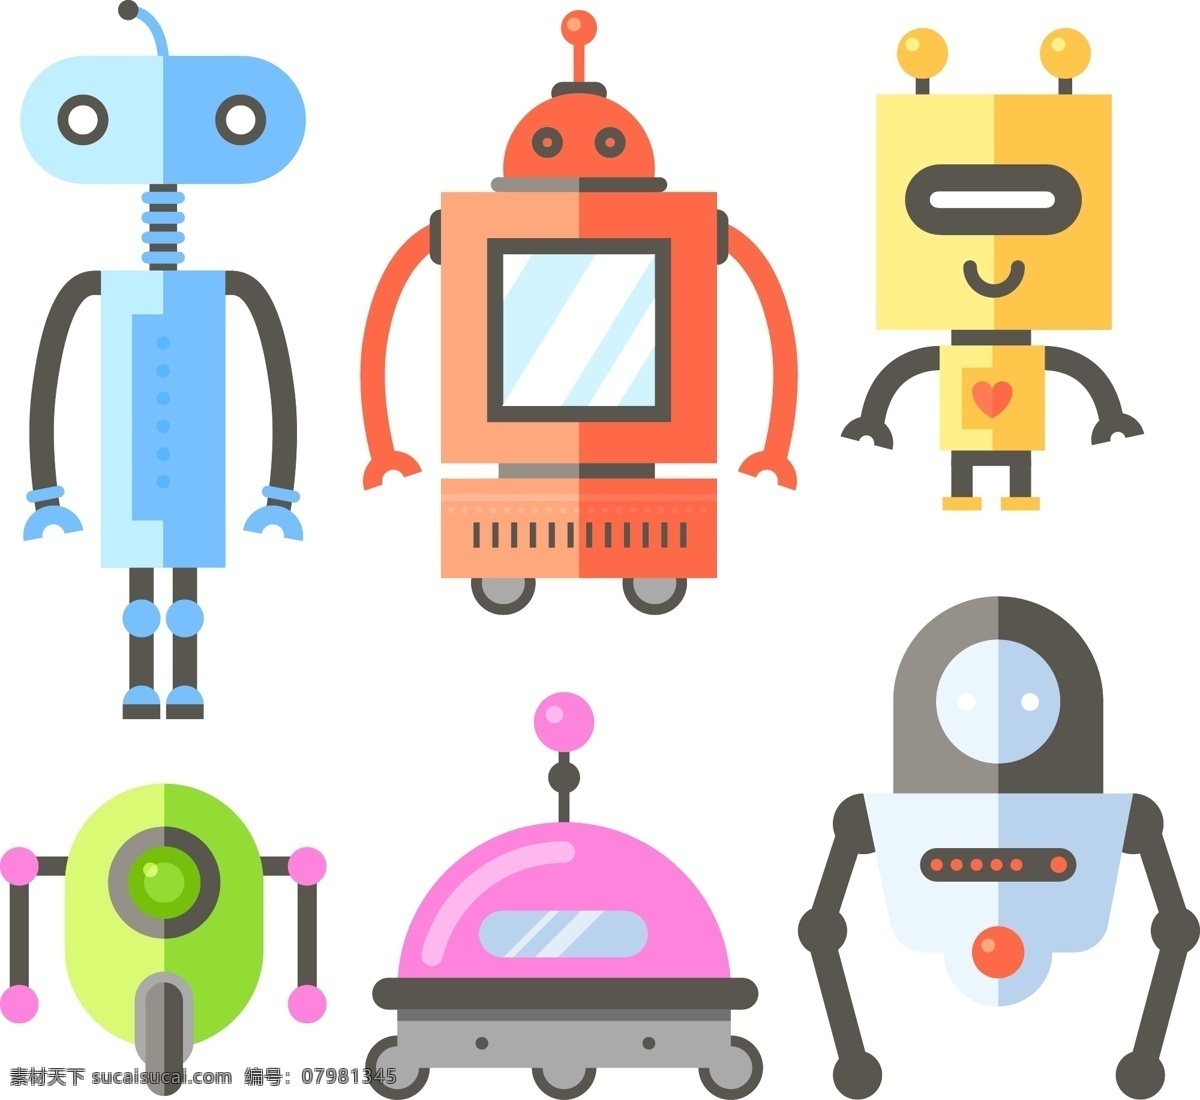 机器人文化 机器人语言 机器人展会 机器人智能 科技 机器人展览 机器人海报 机器人表演 智能机器人 未来机器人 机器人舞蹈 机器人语音 机器人展出 机器人喷绘 机器人设计 机器人背景 卡通设计